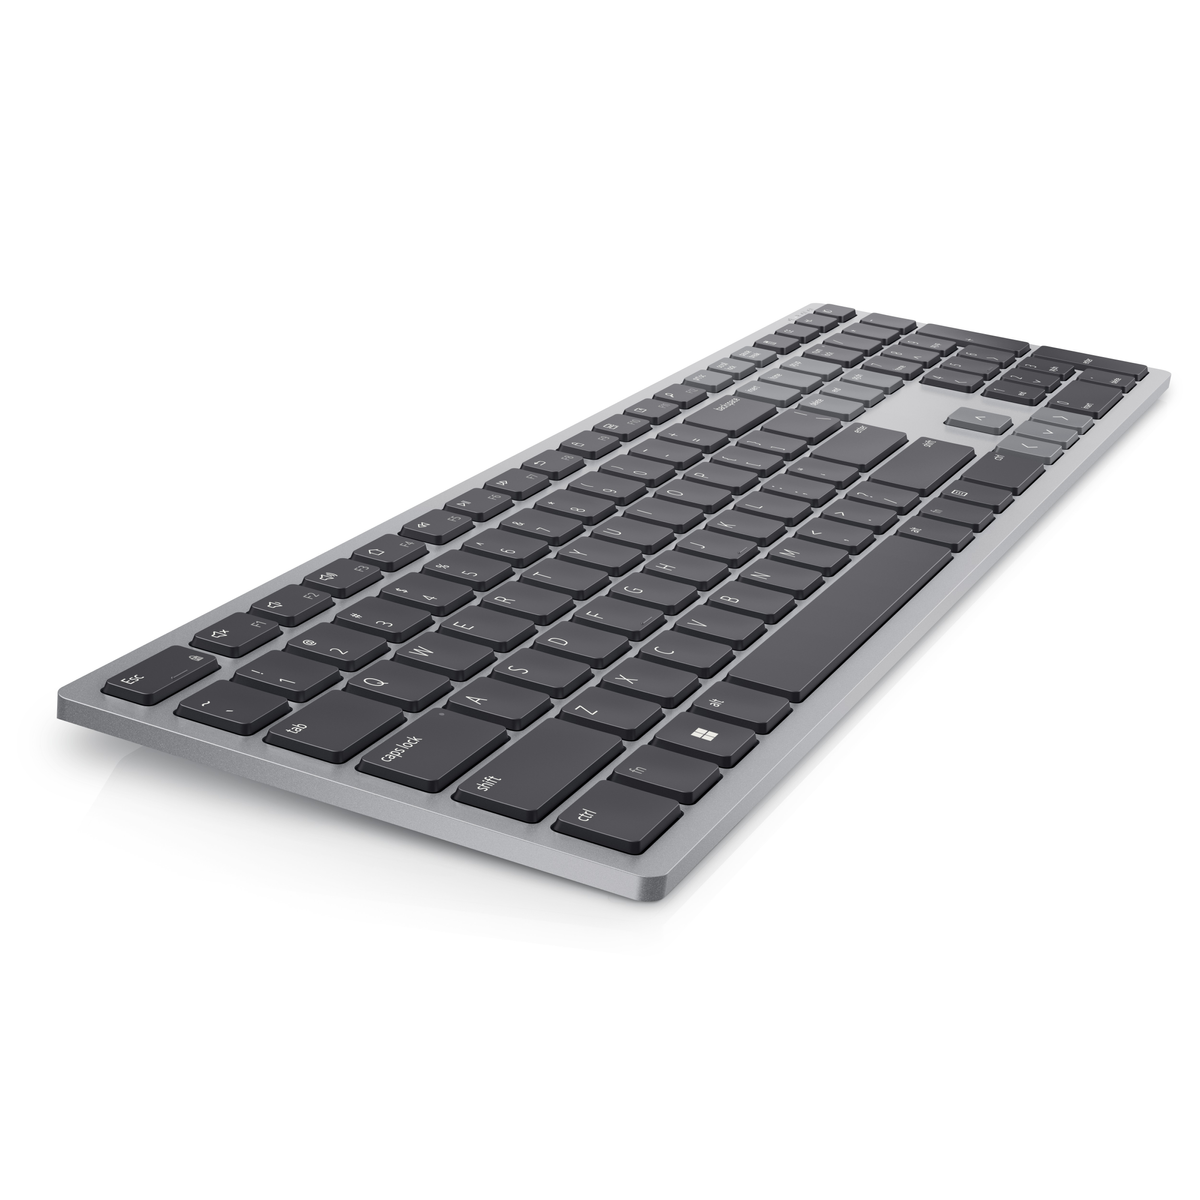 KB700-GY-R-UK, Tastatur DELL